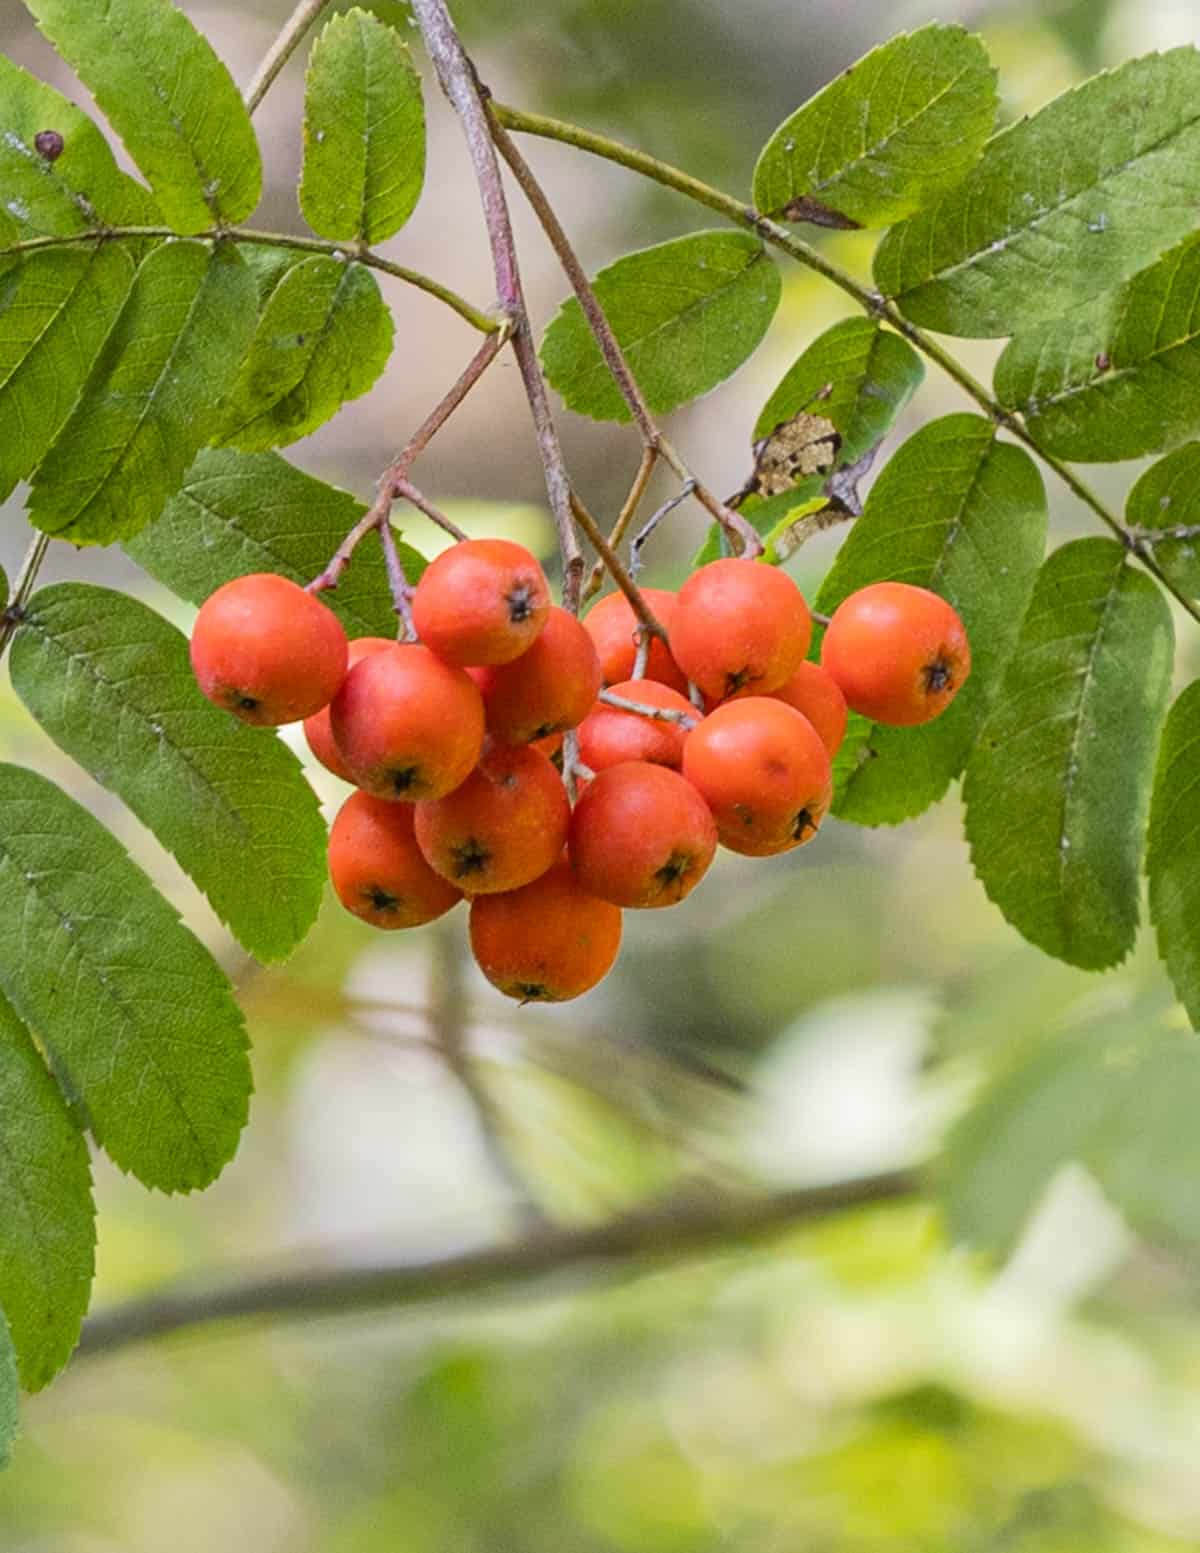 Rowan berries or Sorbus americana fruit growing on a tree. 